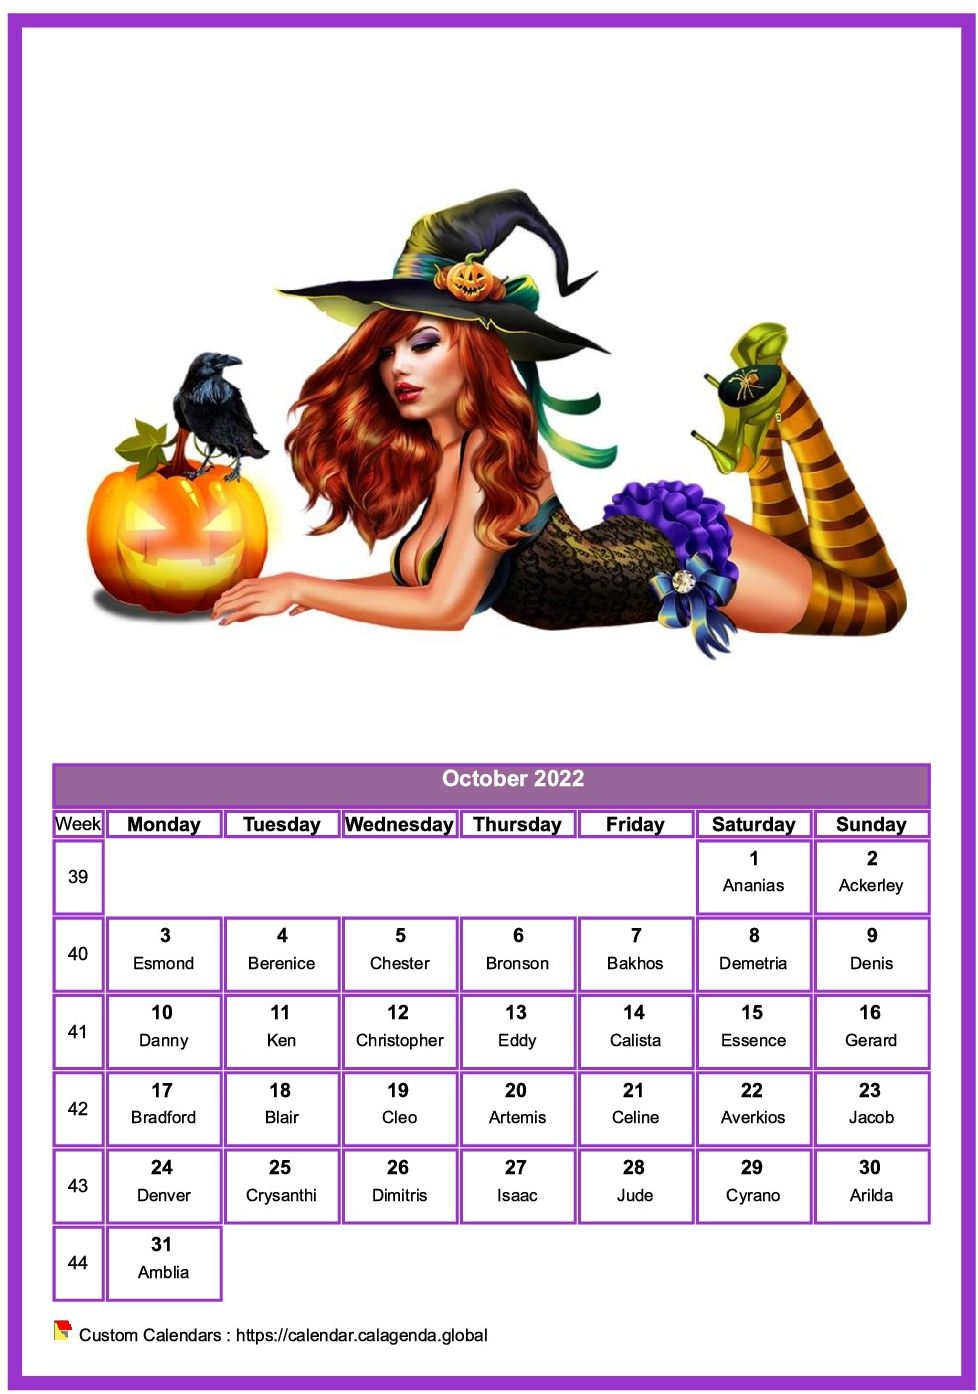 Calendar October 2022 women